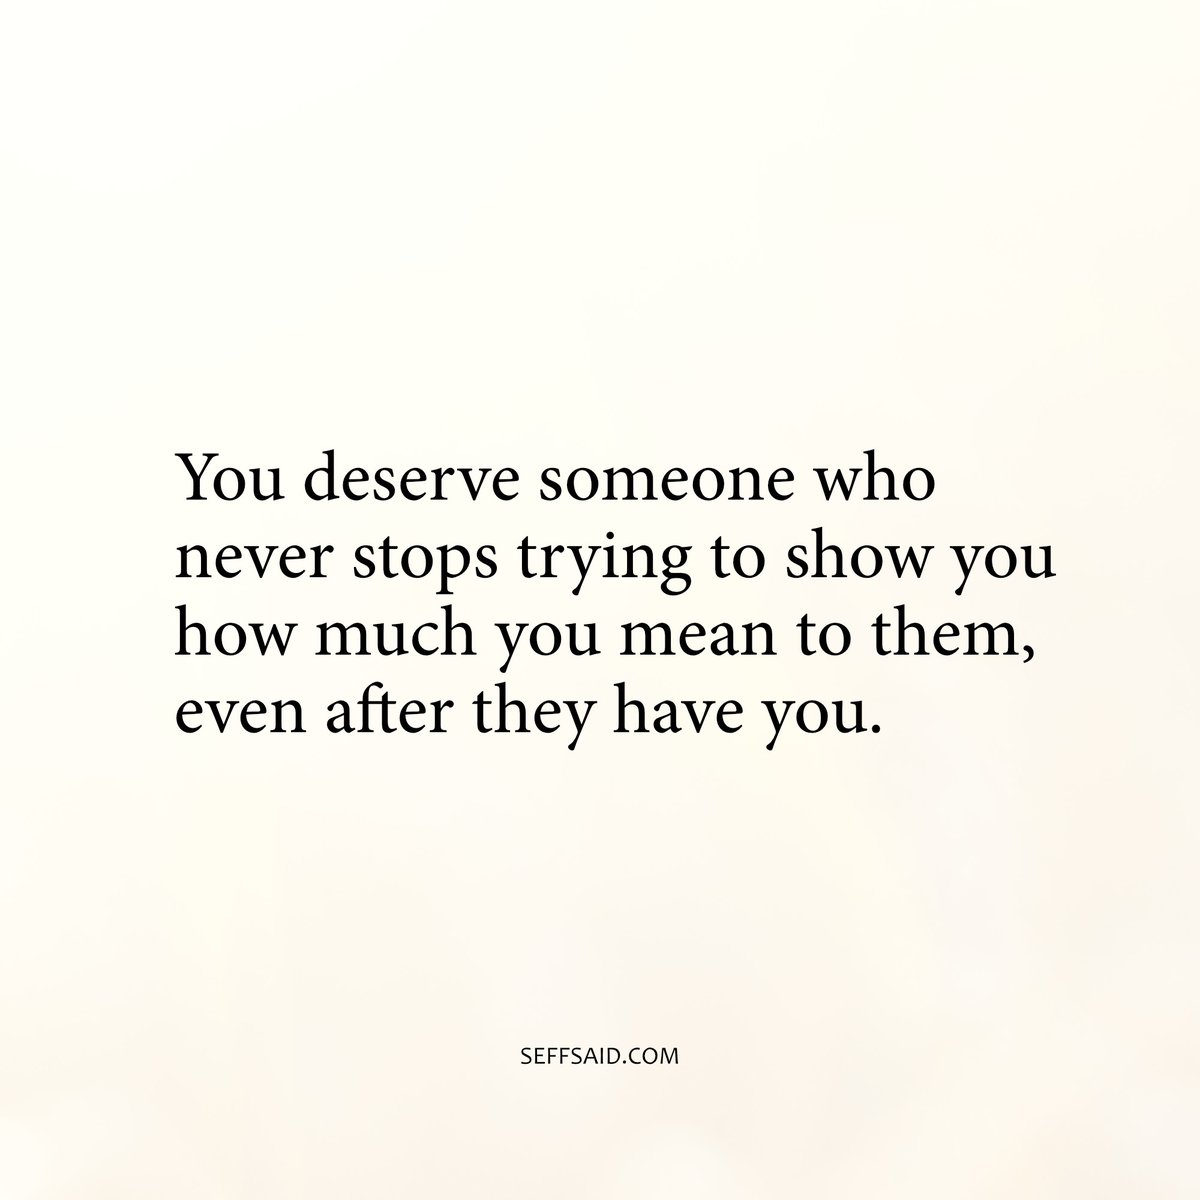 You deserve it